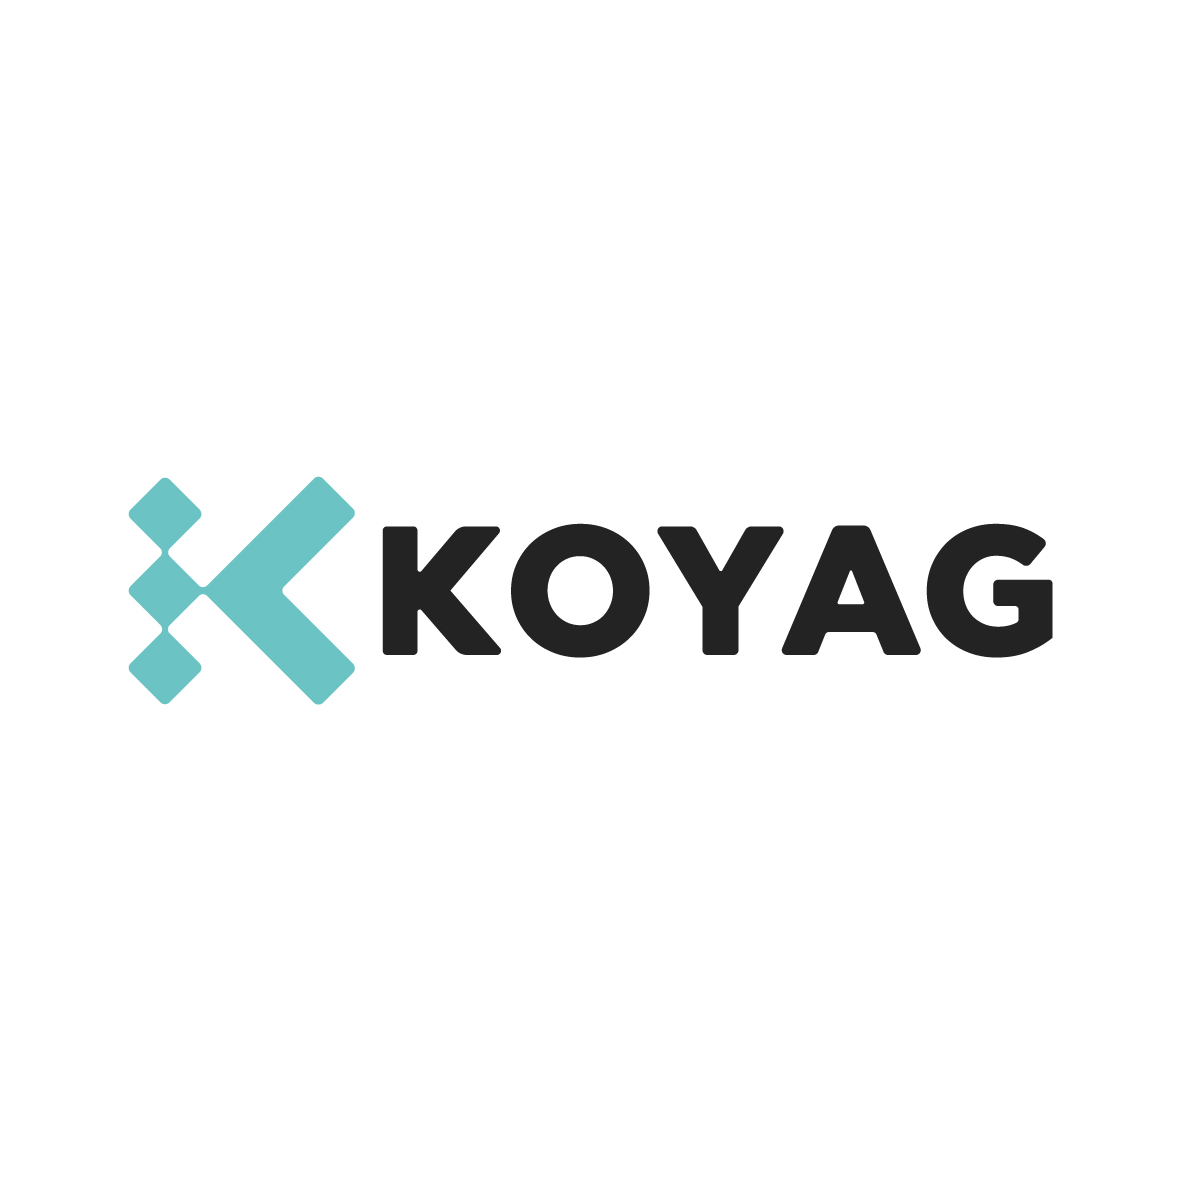 koyag